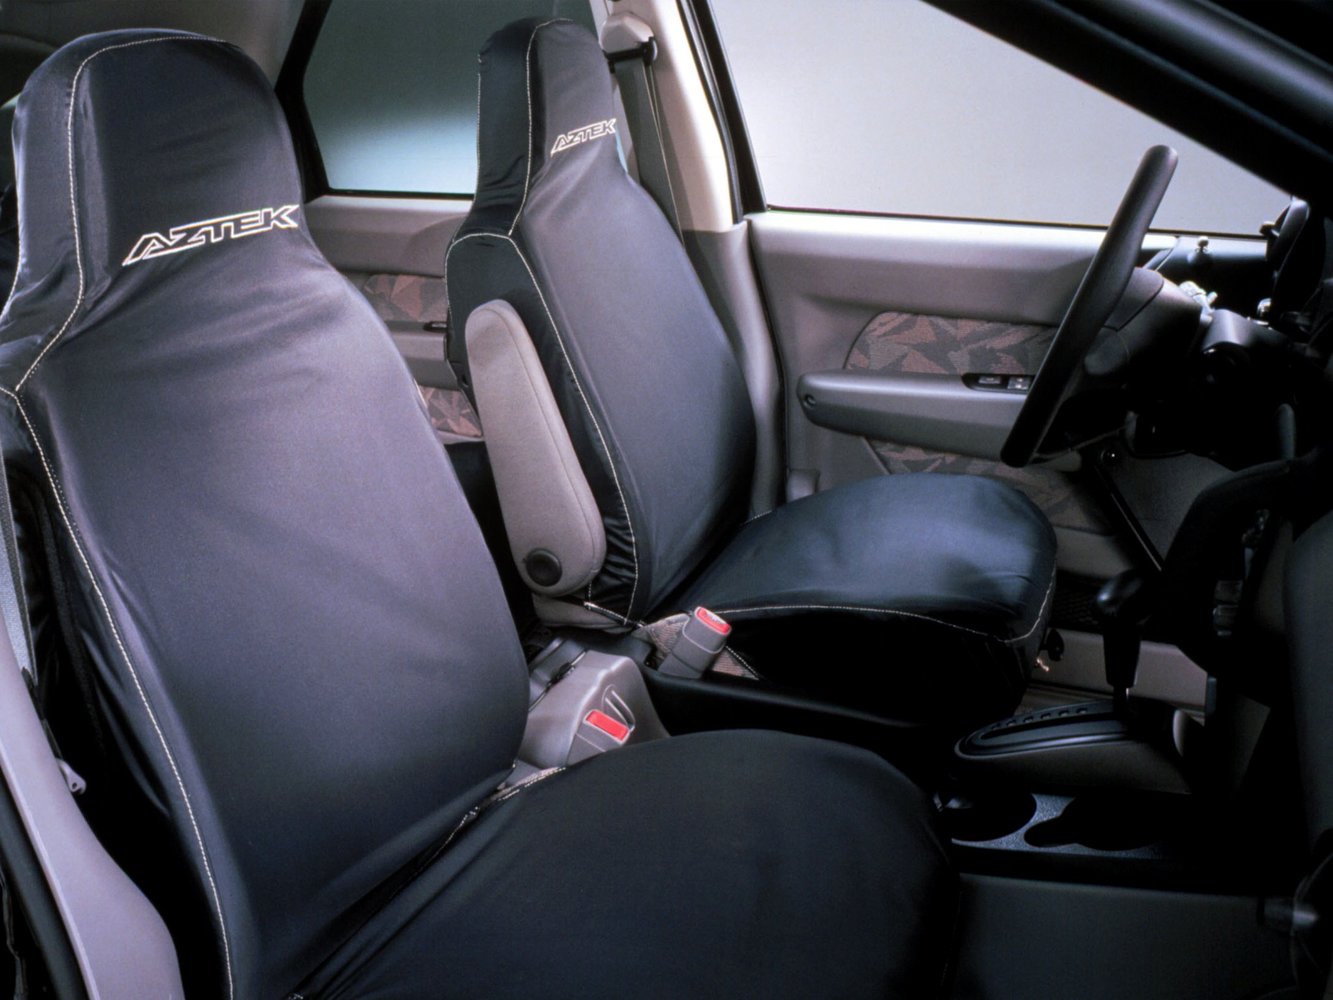 кроссовер Pontiac Aztek 2000 - 2005г выпуска модификация 3.4 AT (188 л.с.)